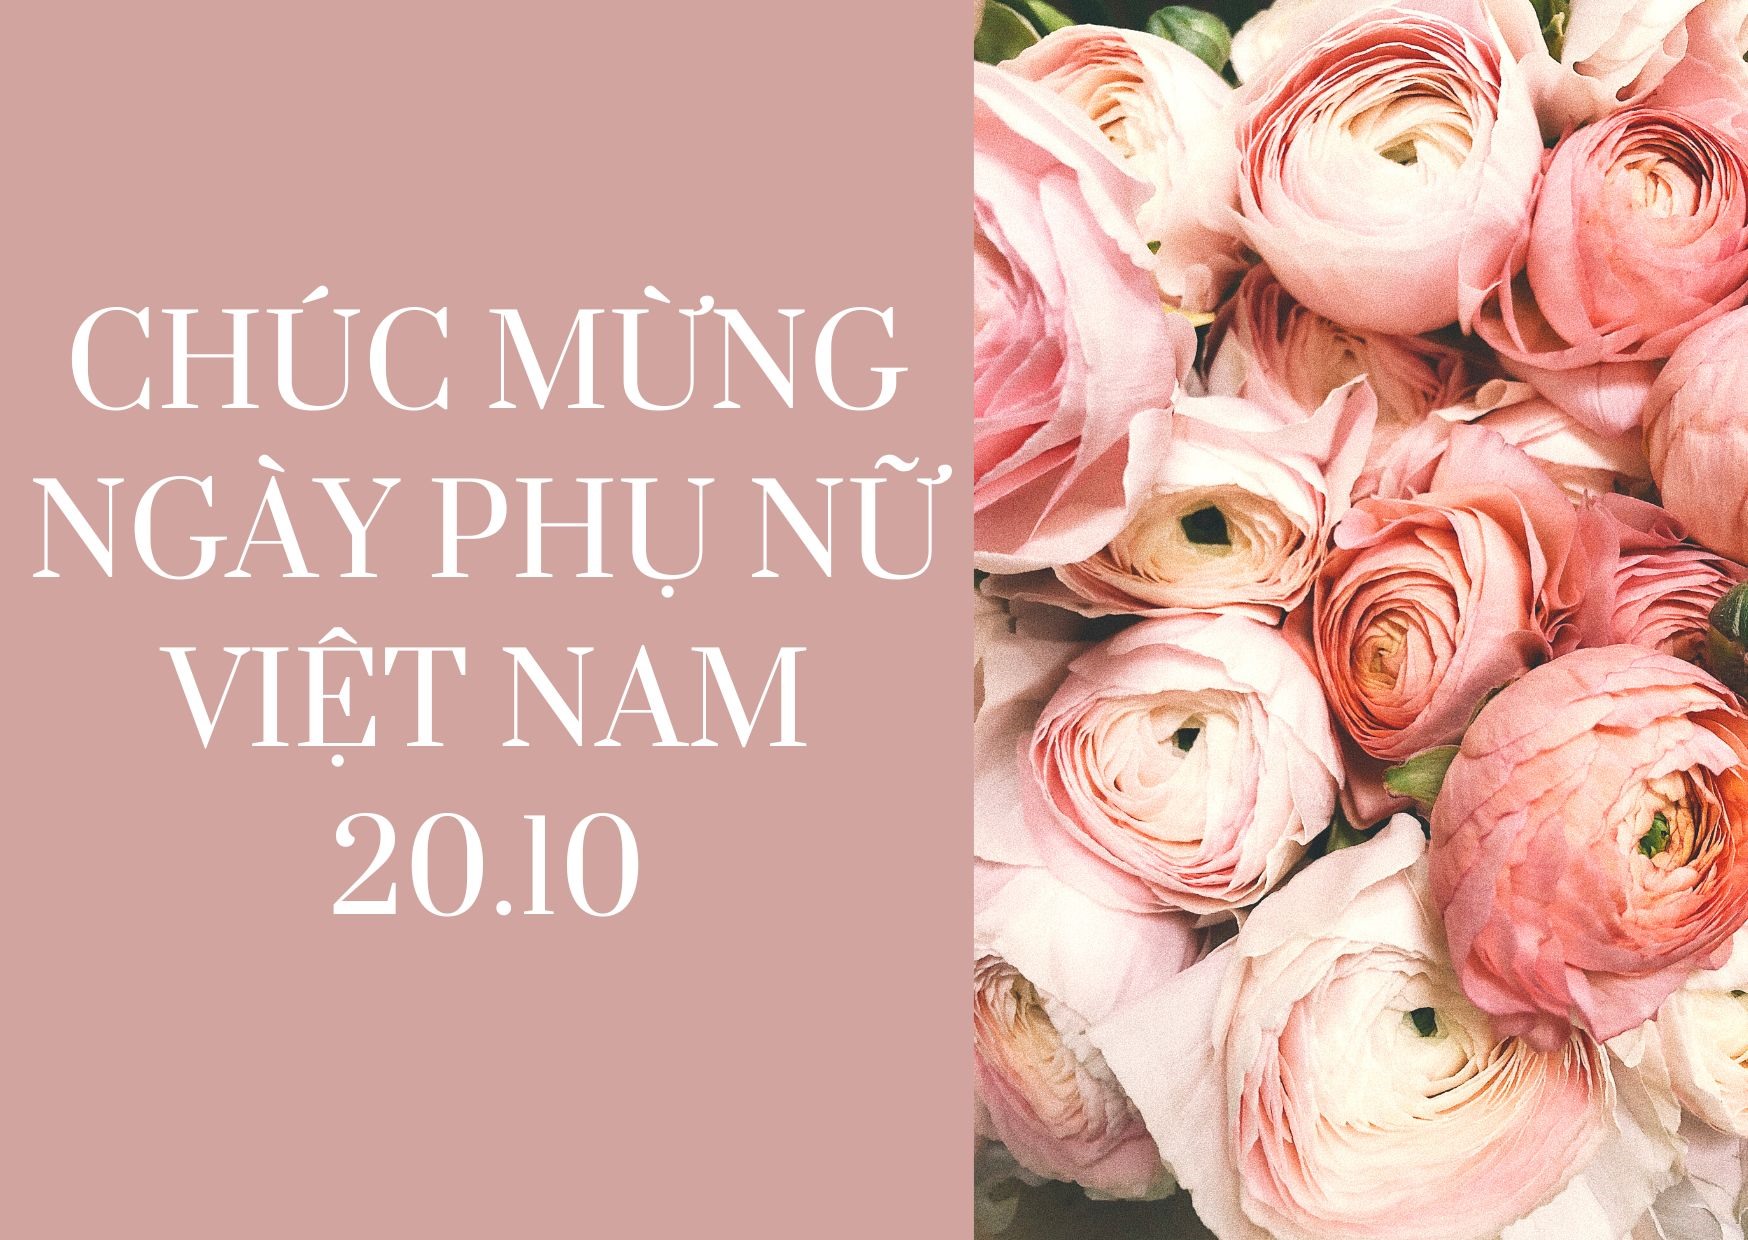 Hãy gửi tới mẹ những lời chúc chân thành nhất vào ngày Phụ nữ Việt Nam 20.10. Ảnh: Canva